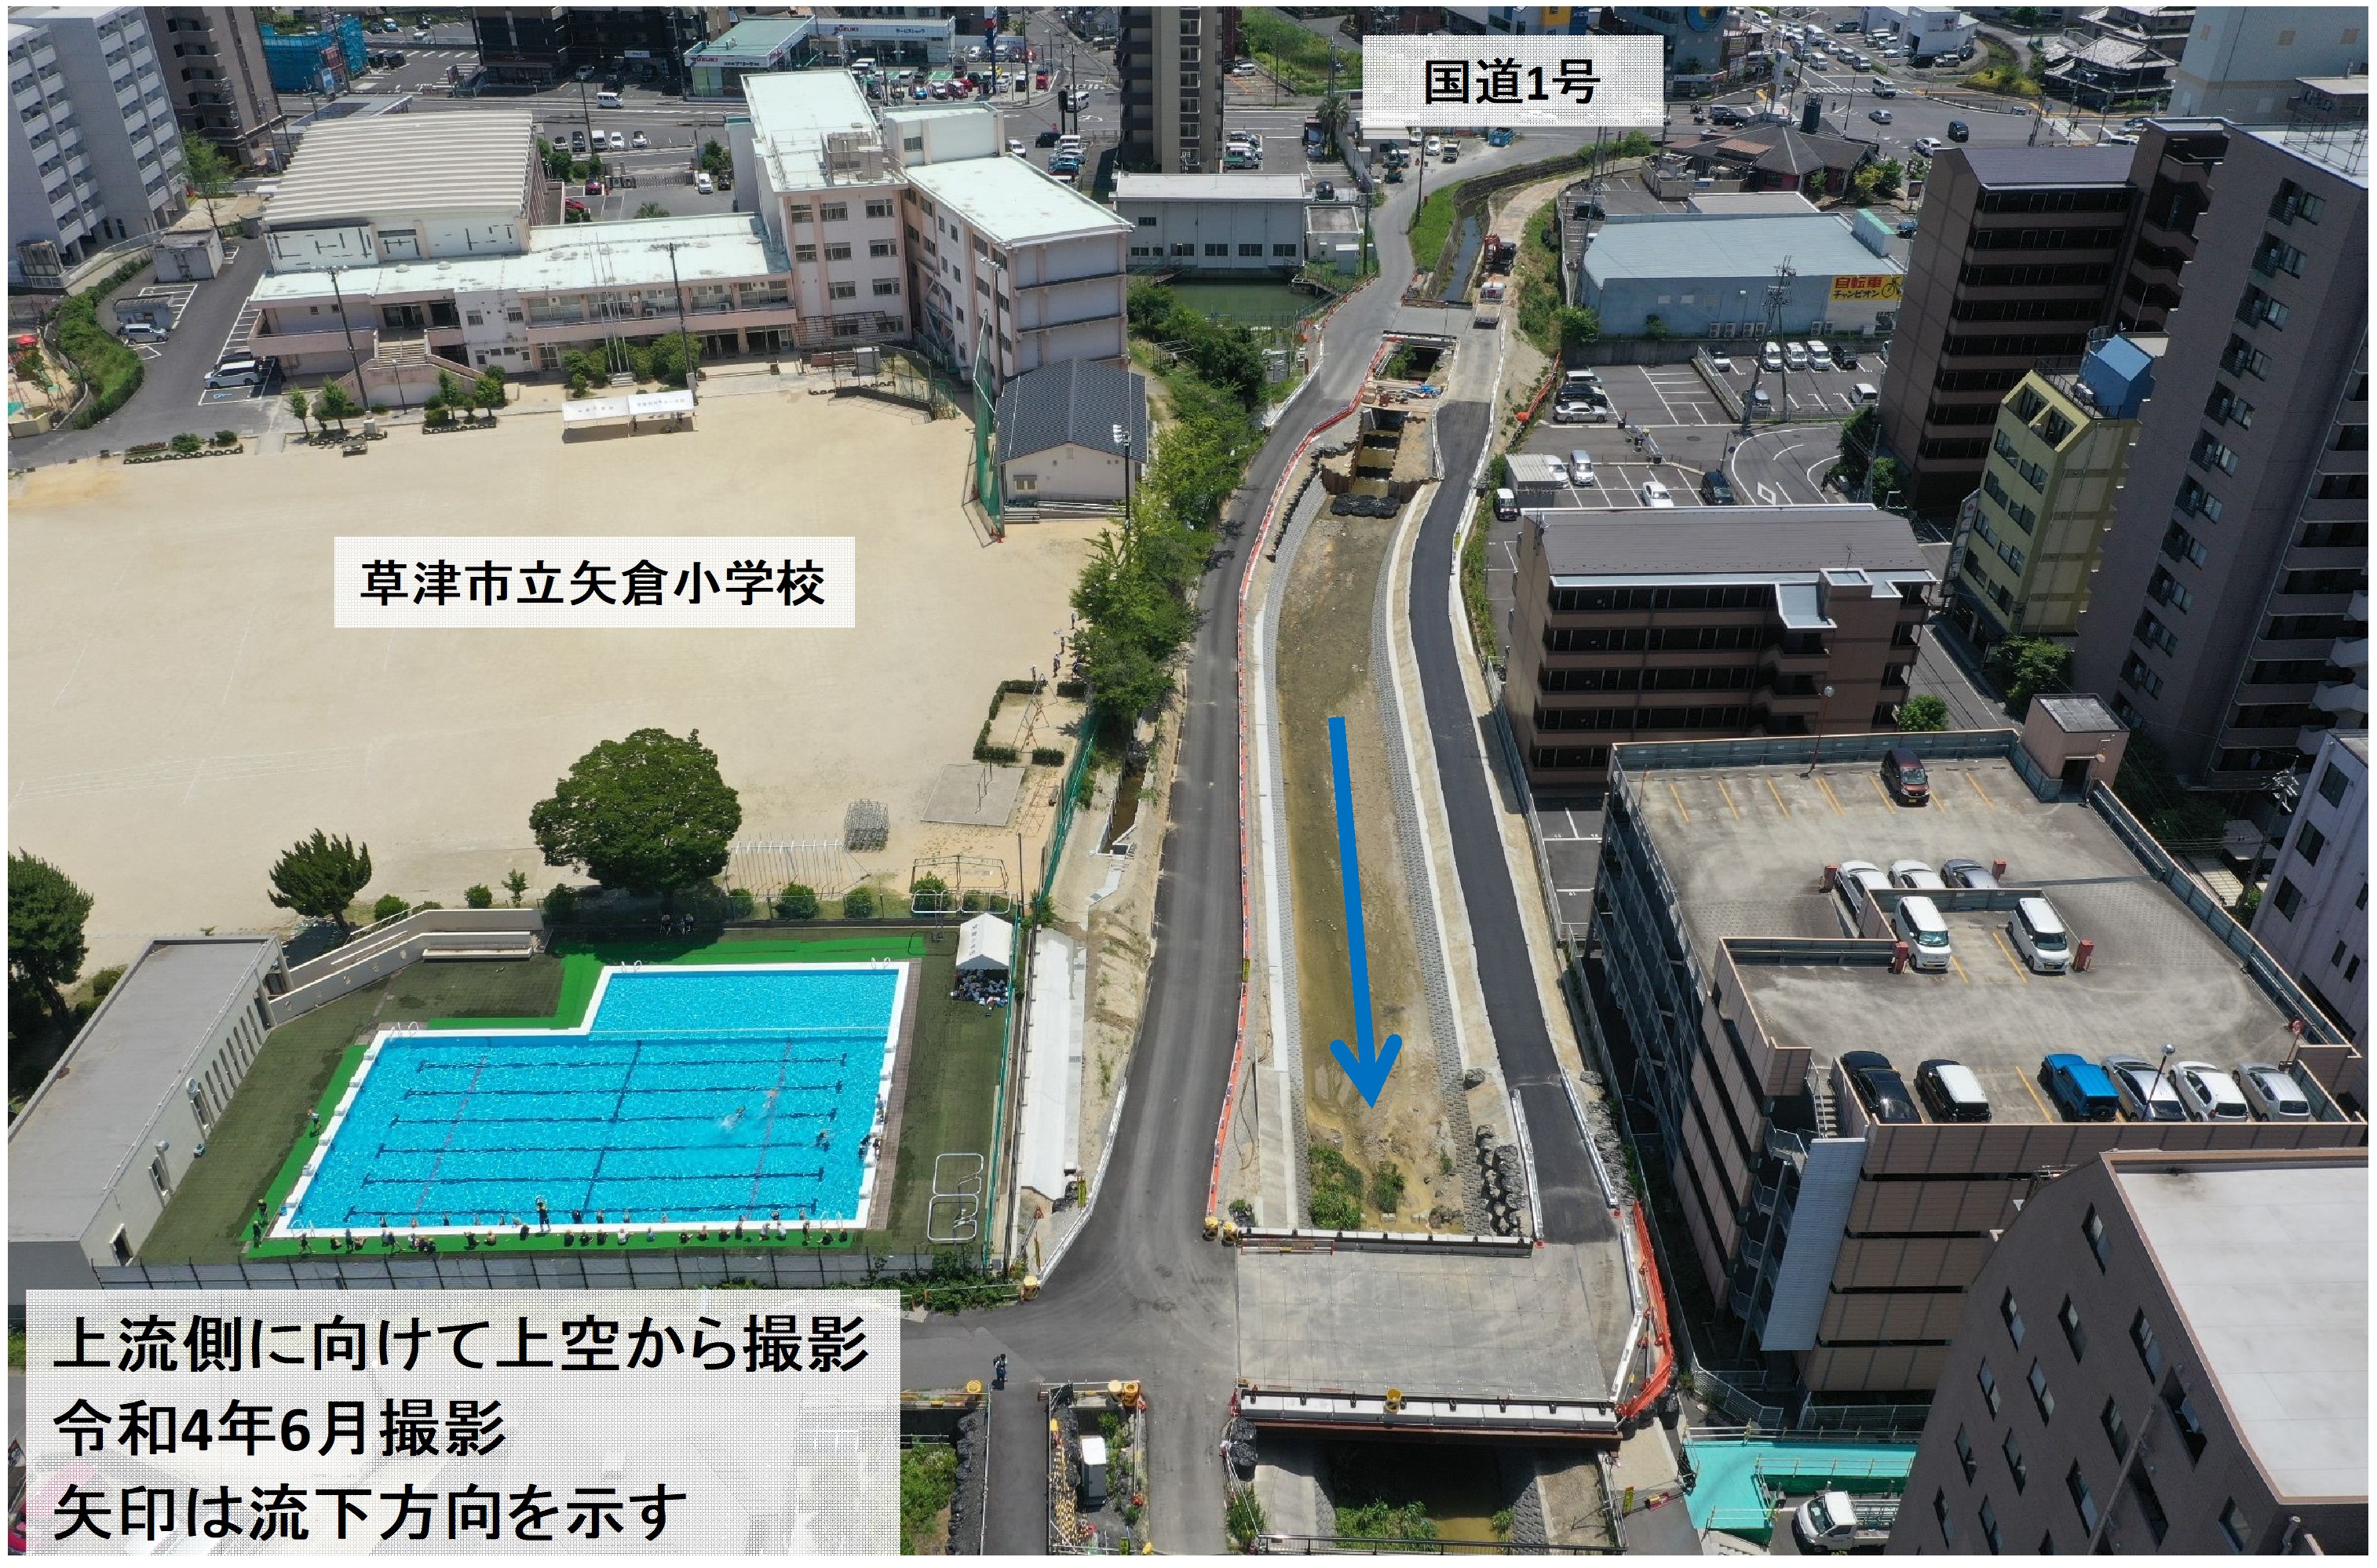 北川河川改修事業計画の工事後の空撮画像です